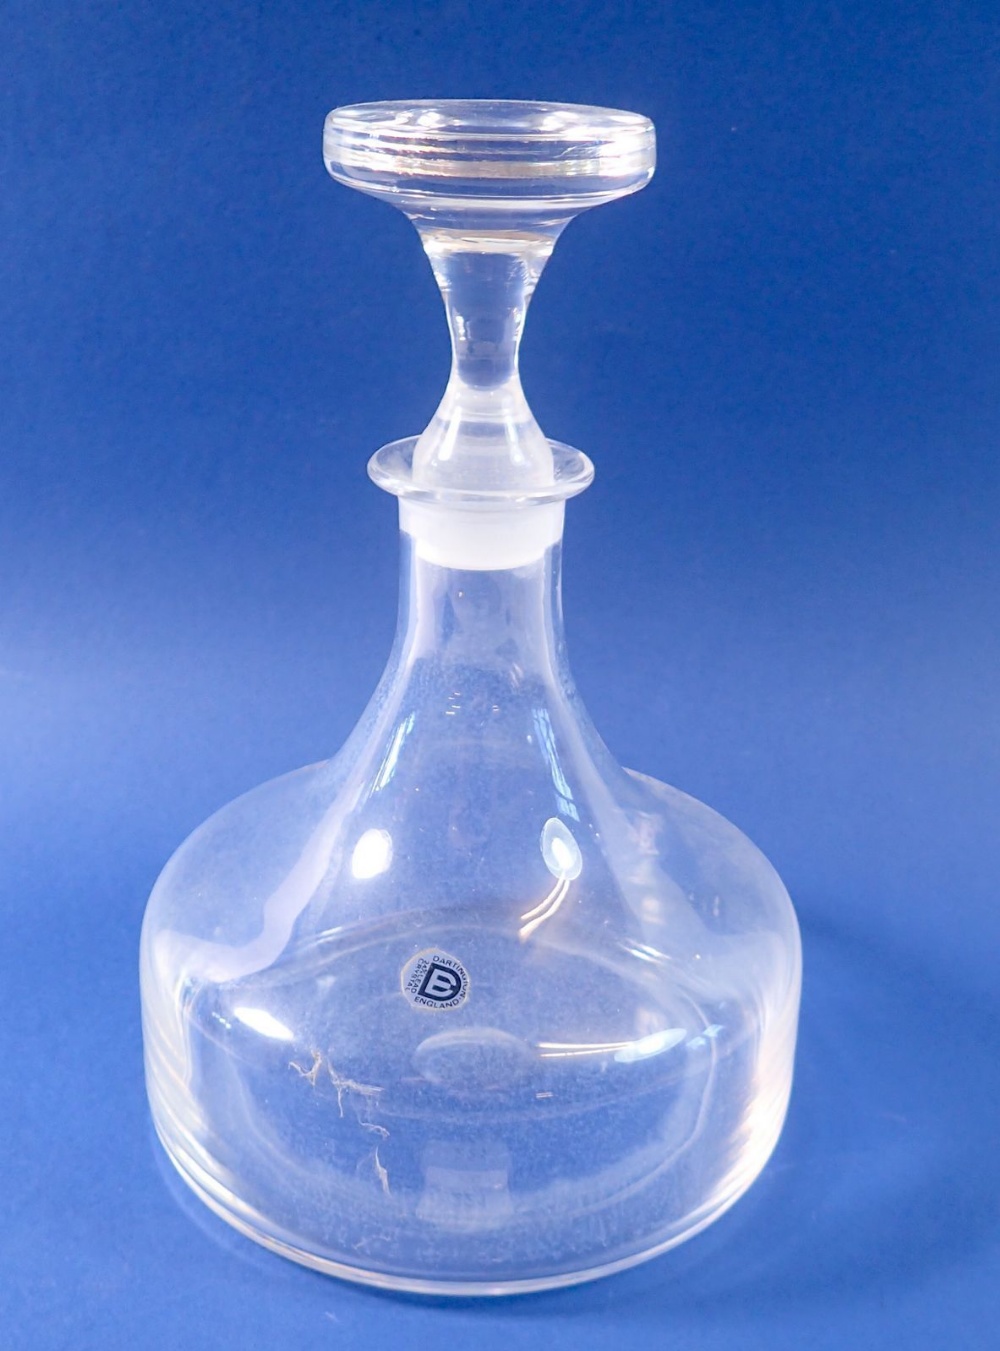 A Dartington glass decanter, 22cm tall